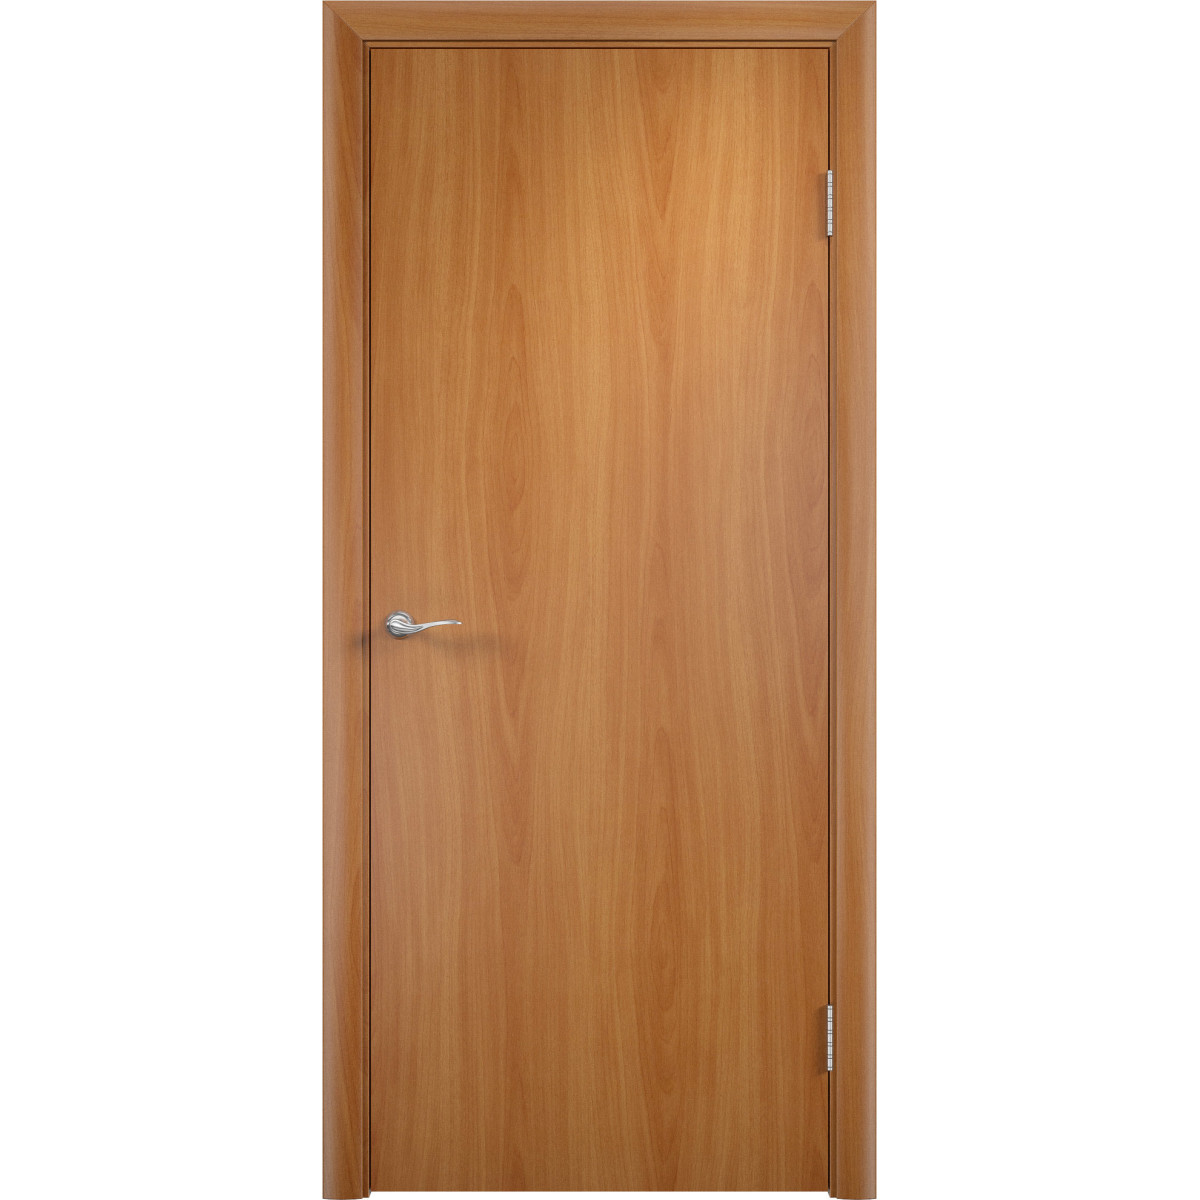 Дверь межкомнатная глухая 80x200 см, ламинация, цвет миланский орех